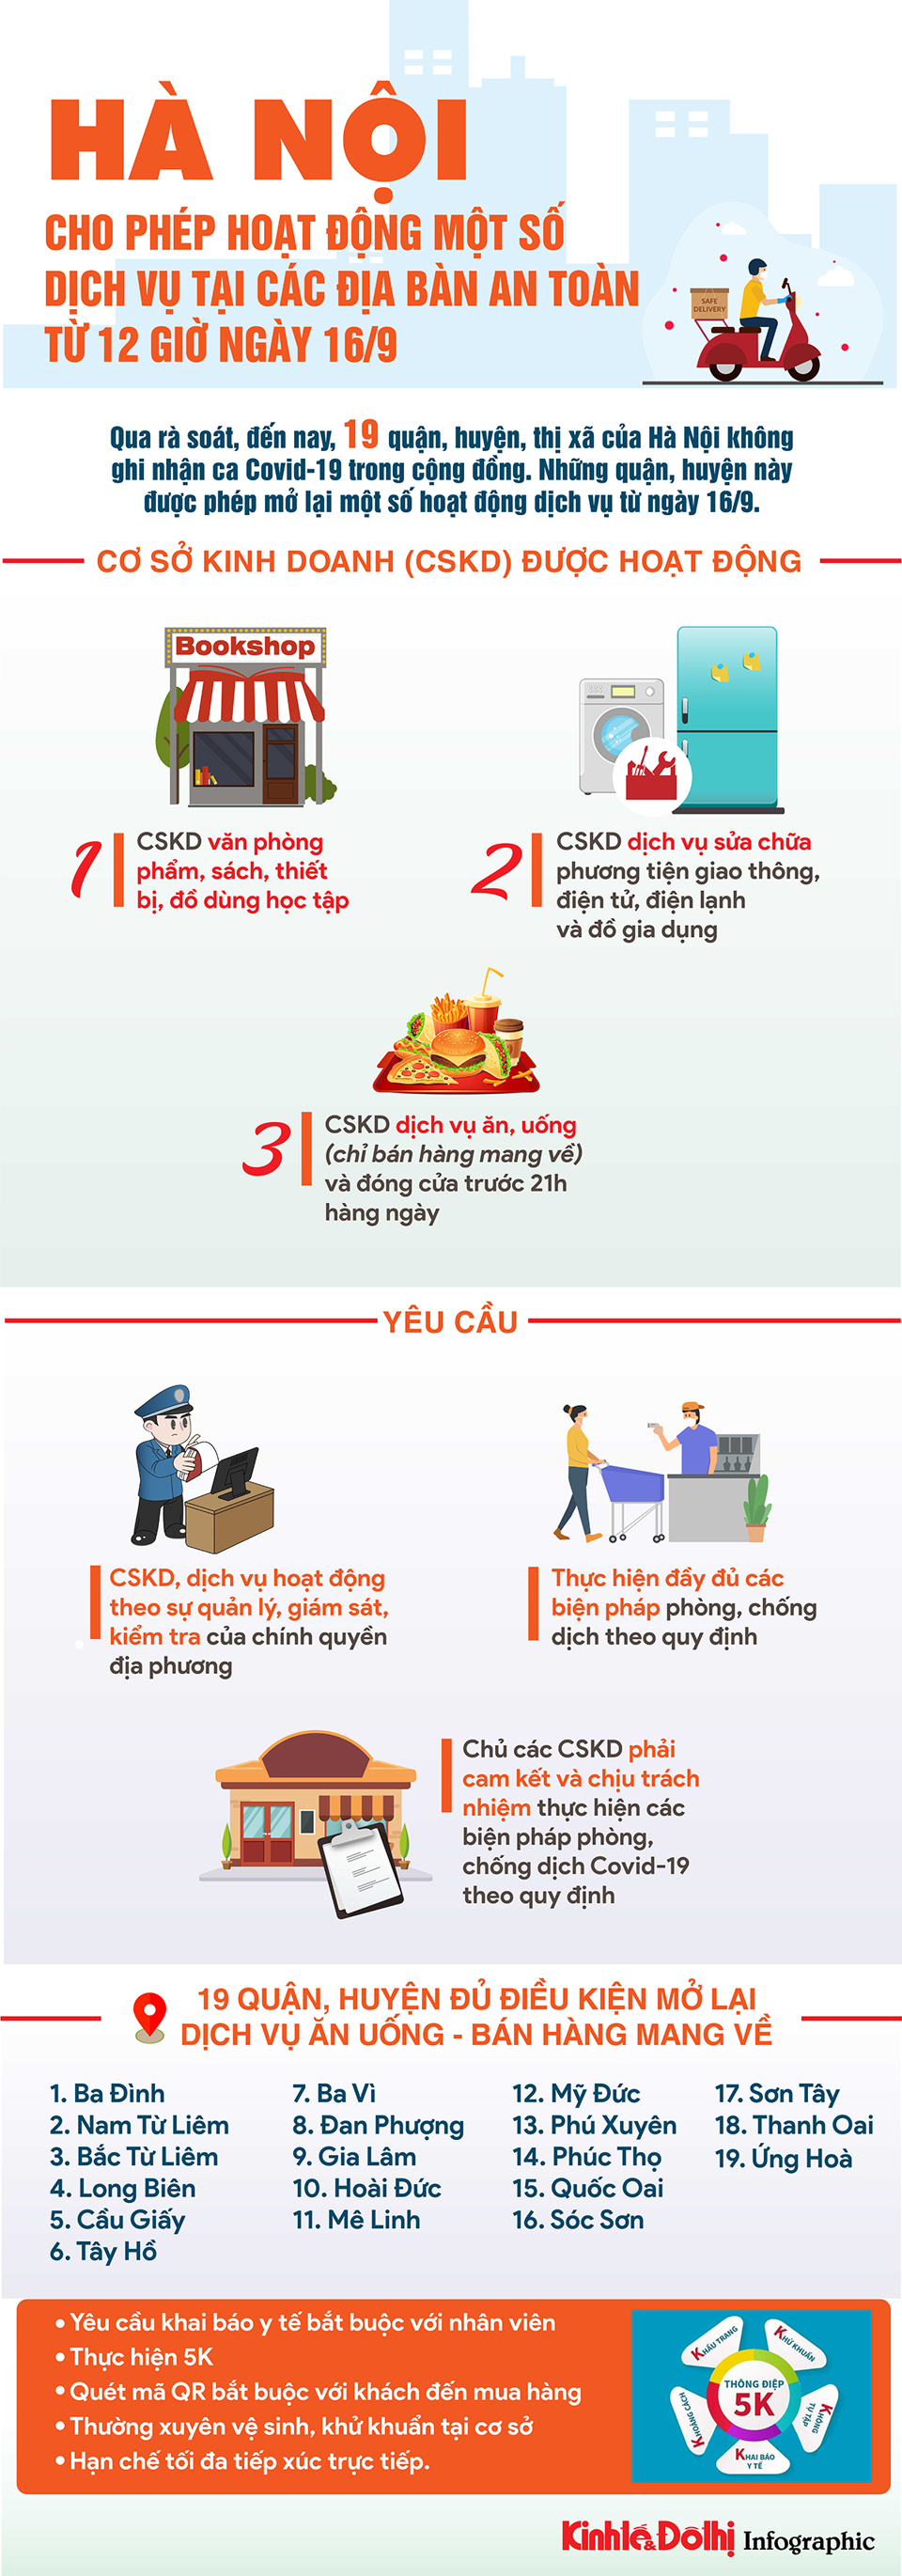 [Infographic] Chi tiết 19 quận, huyện của Hà Nội được mở lại dịch vụ ăn uống - bán mang về - Ảnh 1